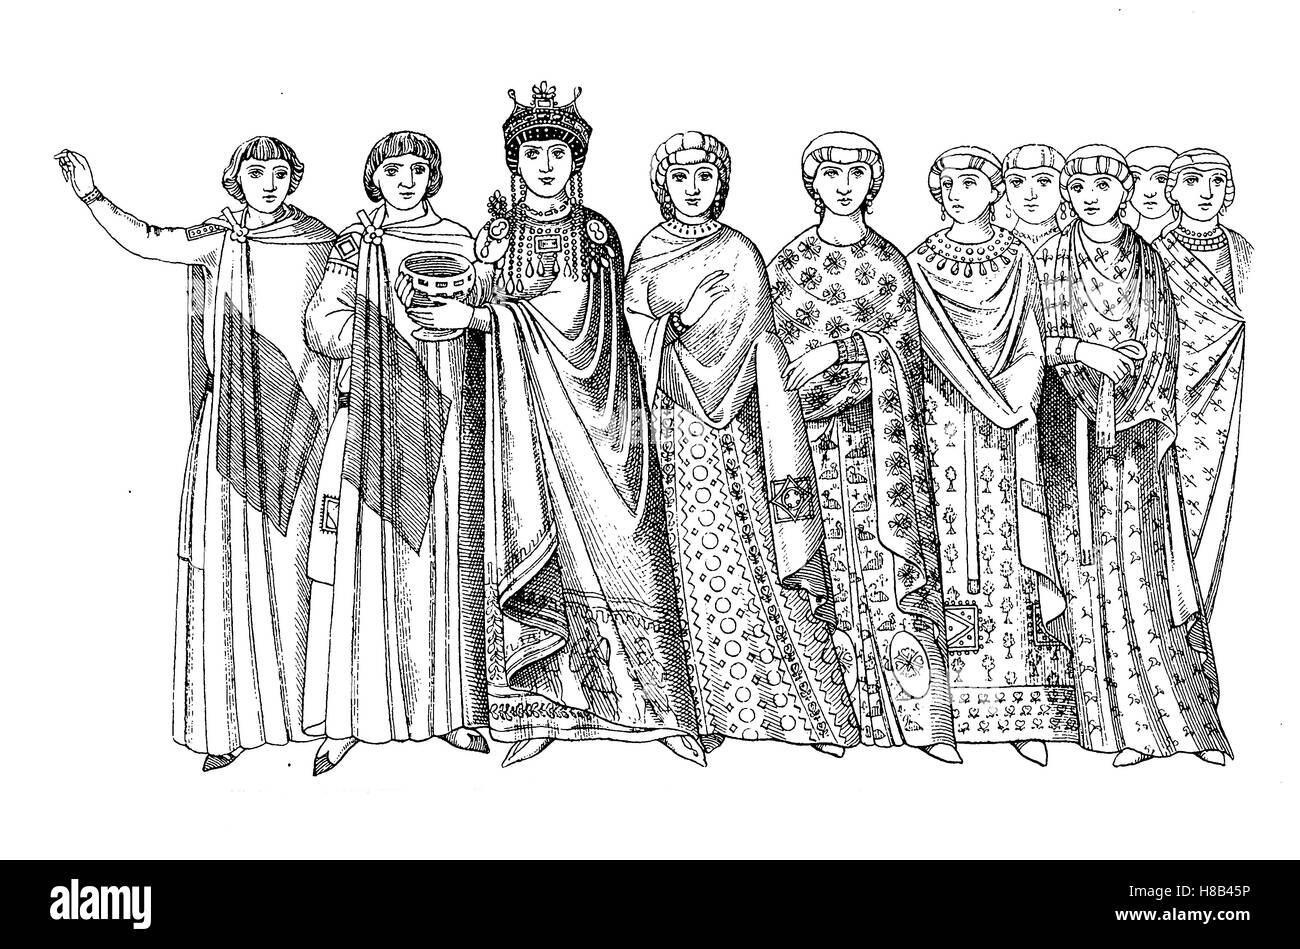 Theodora, ca 500-548, war die Ehefrau des östlichen Kaiser Justinian. Hier, mit ihrem Gefolge in byzantinischen Gerichten nach einem Mosaik in Ravenna, Geschichte der Mode, Kostüm-Geschichte Stockfoto